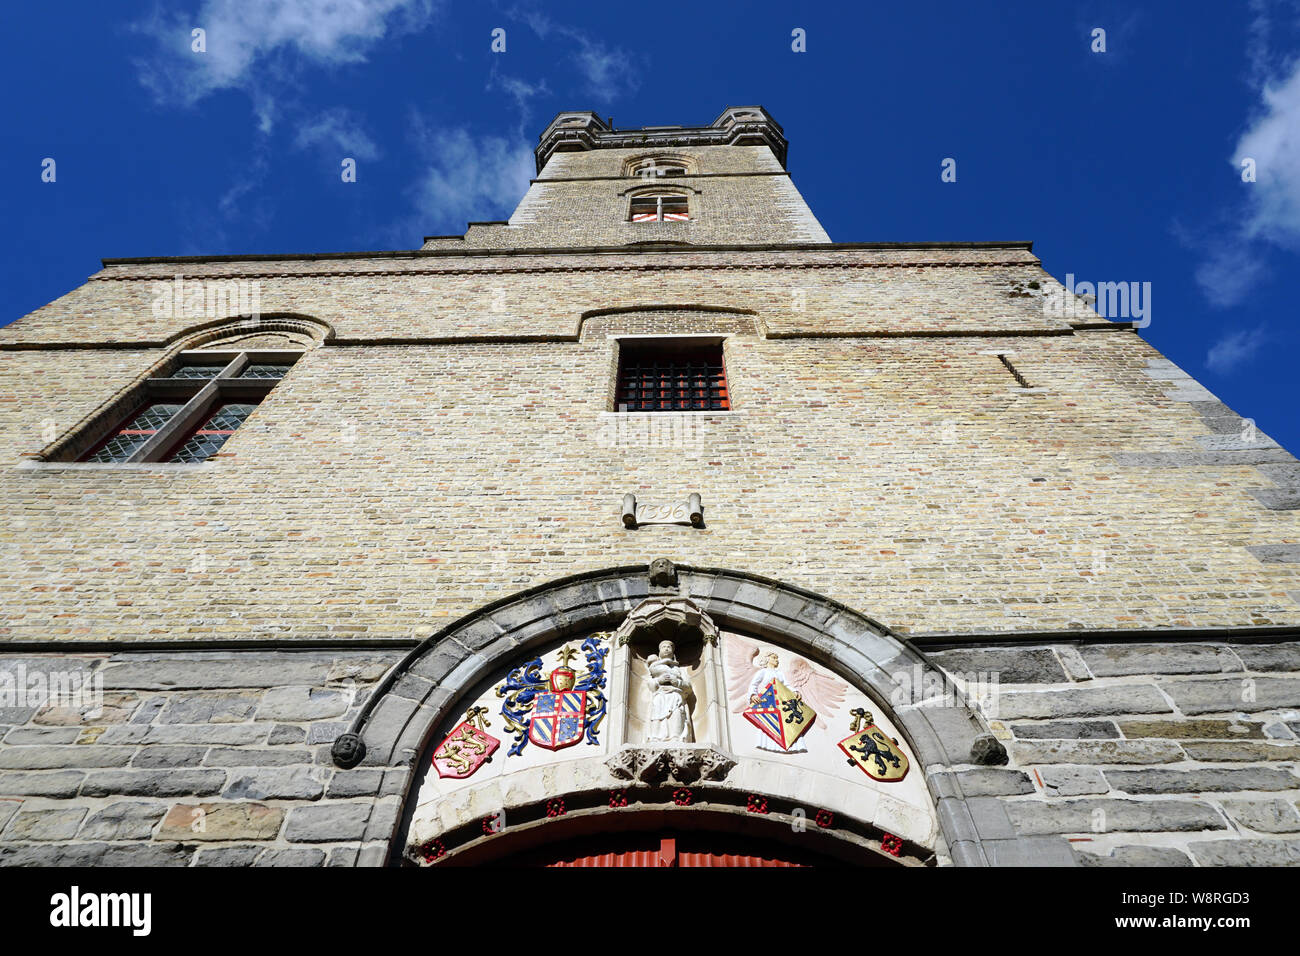 Historischer Glockenturm von 1396, Sluis, Zeeland, Niederlande Stockfoto